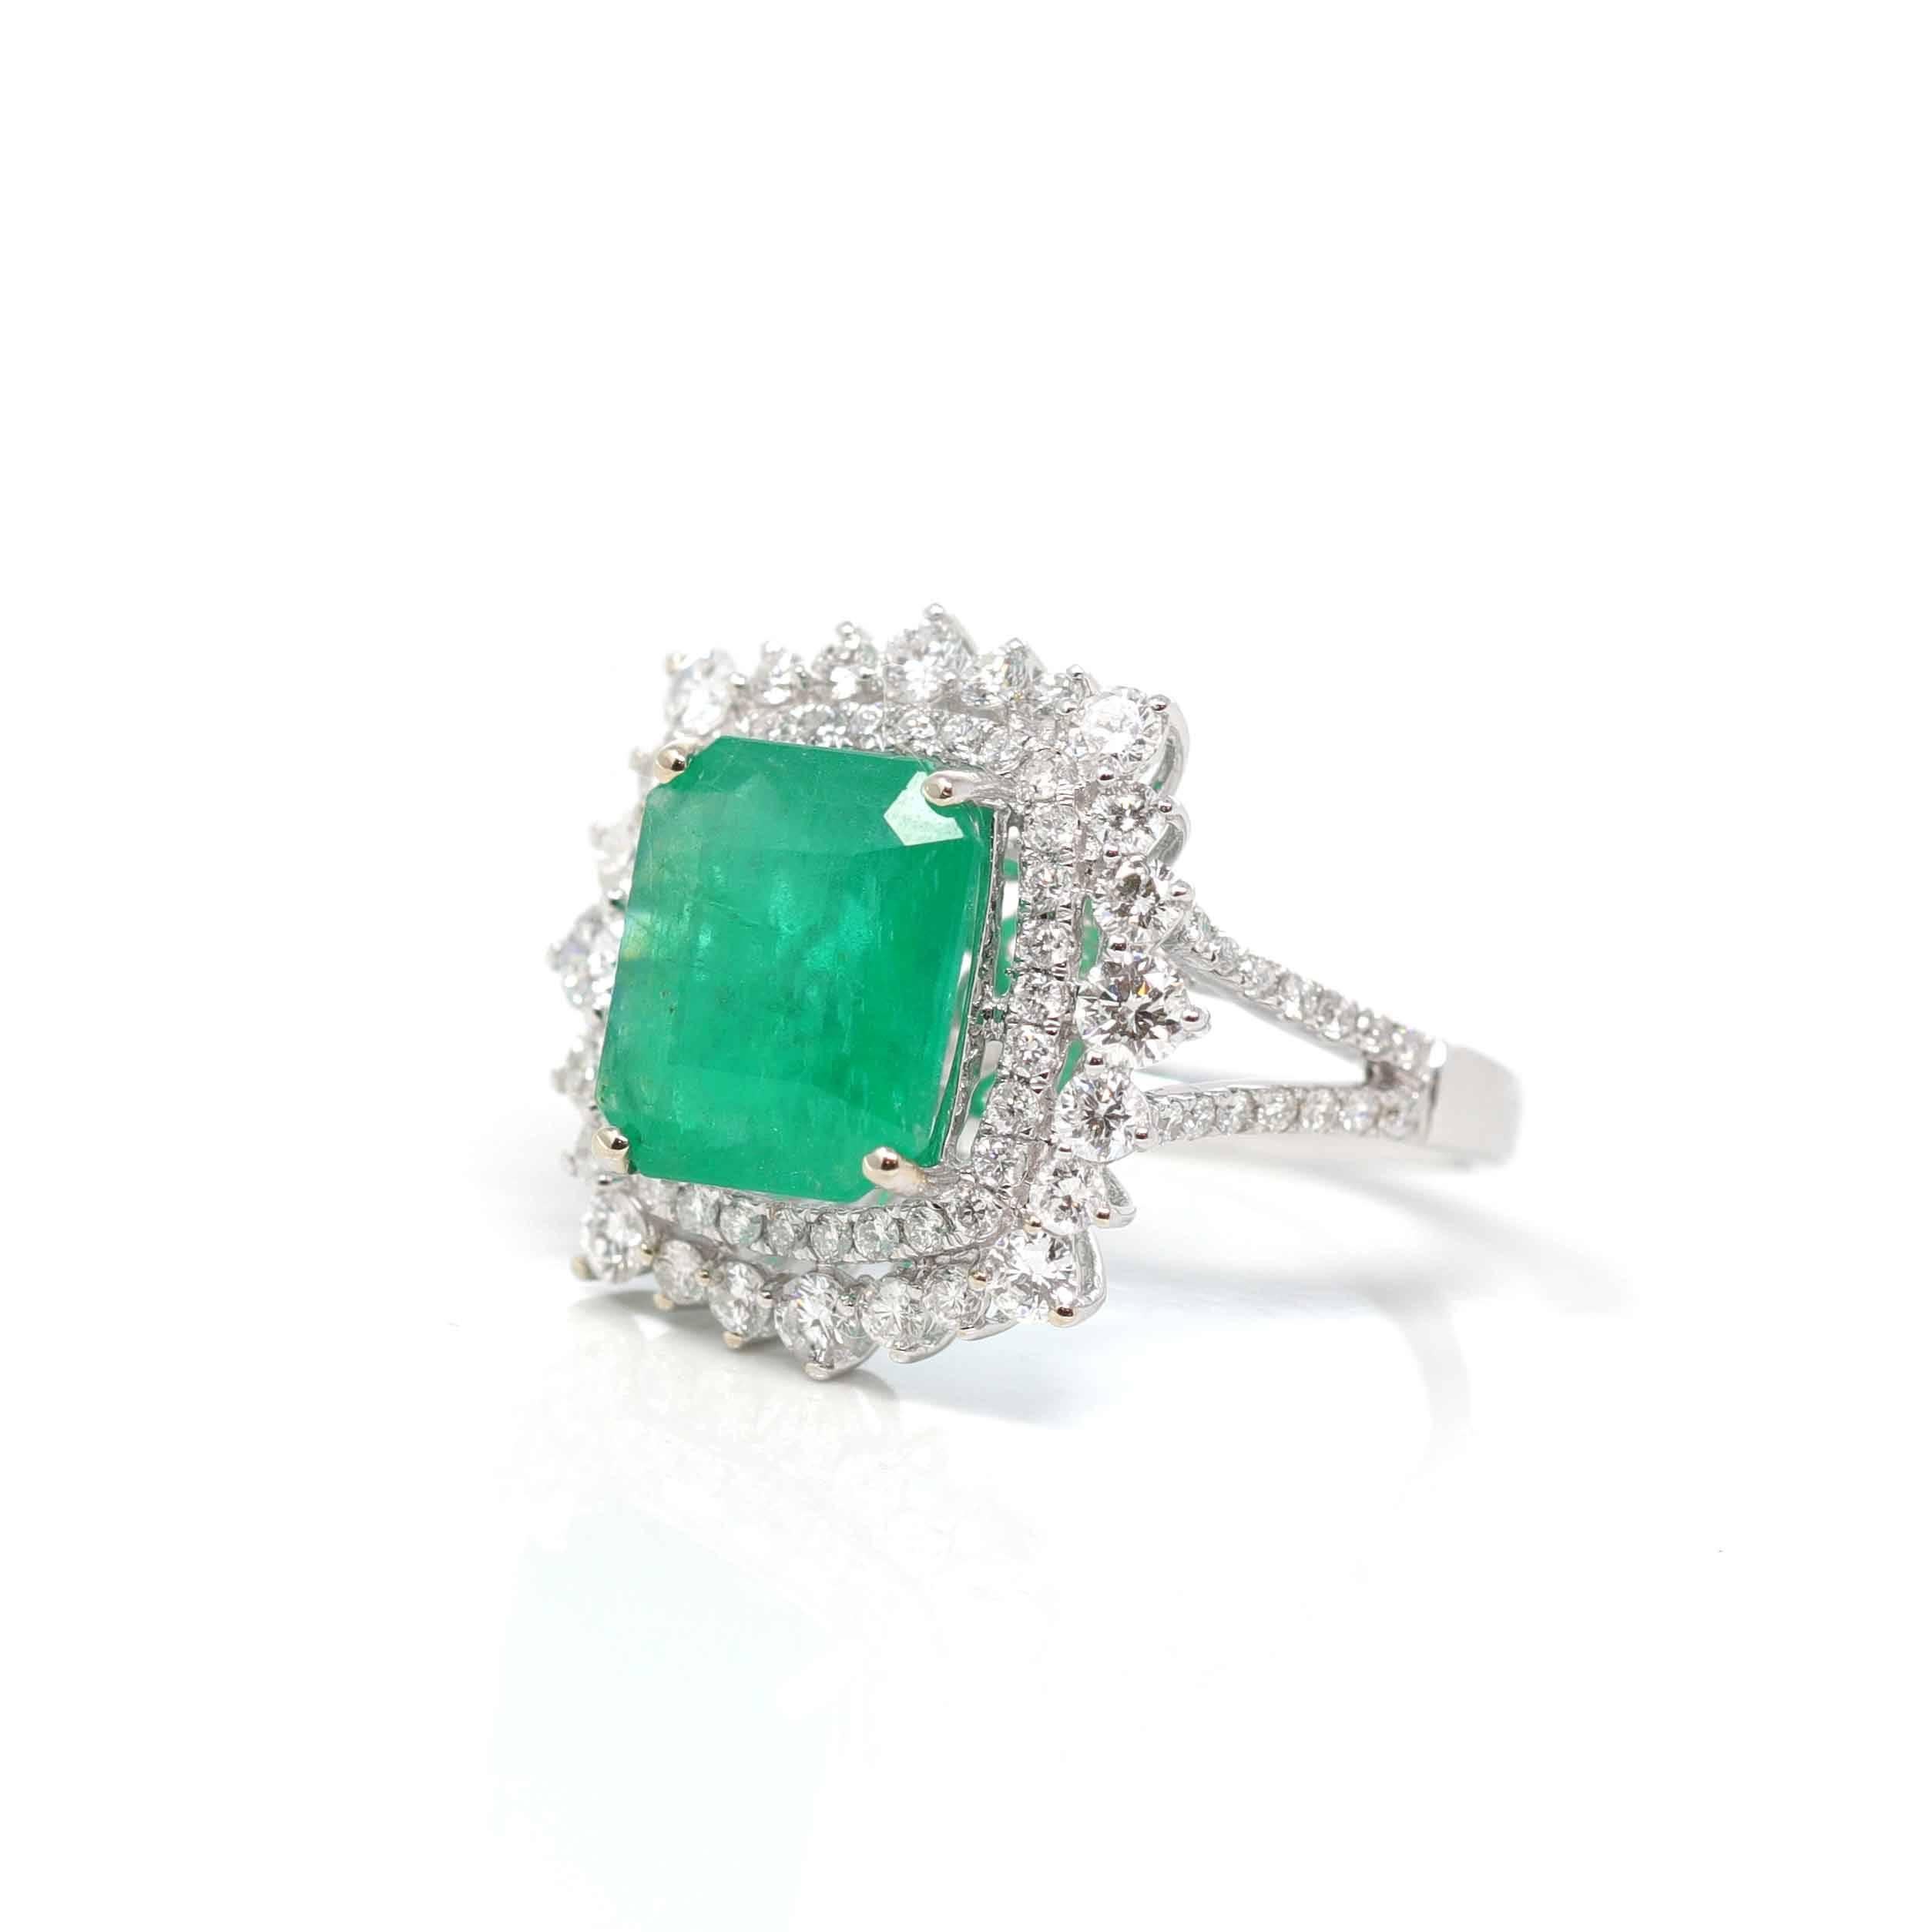 * Design-Konzept--- Dieser Ring verfügt über einen Smaragd im Smaragdschliff von 3,53 ct. Das Design ist schlicht und doch elegant. Der Ring sieht sehr exquisit aus mit einigen Diamanten, die die Akzente nachzeichnen. Die Kunsthandwerker von